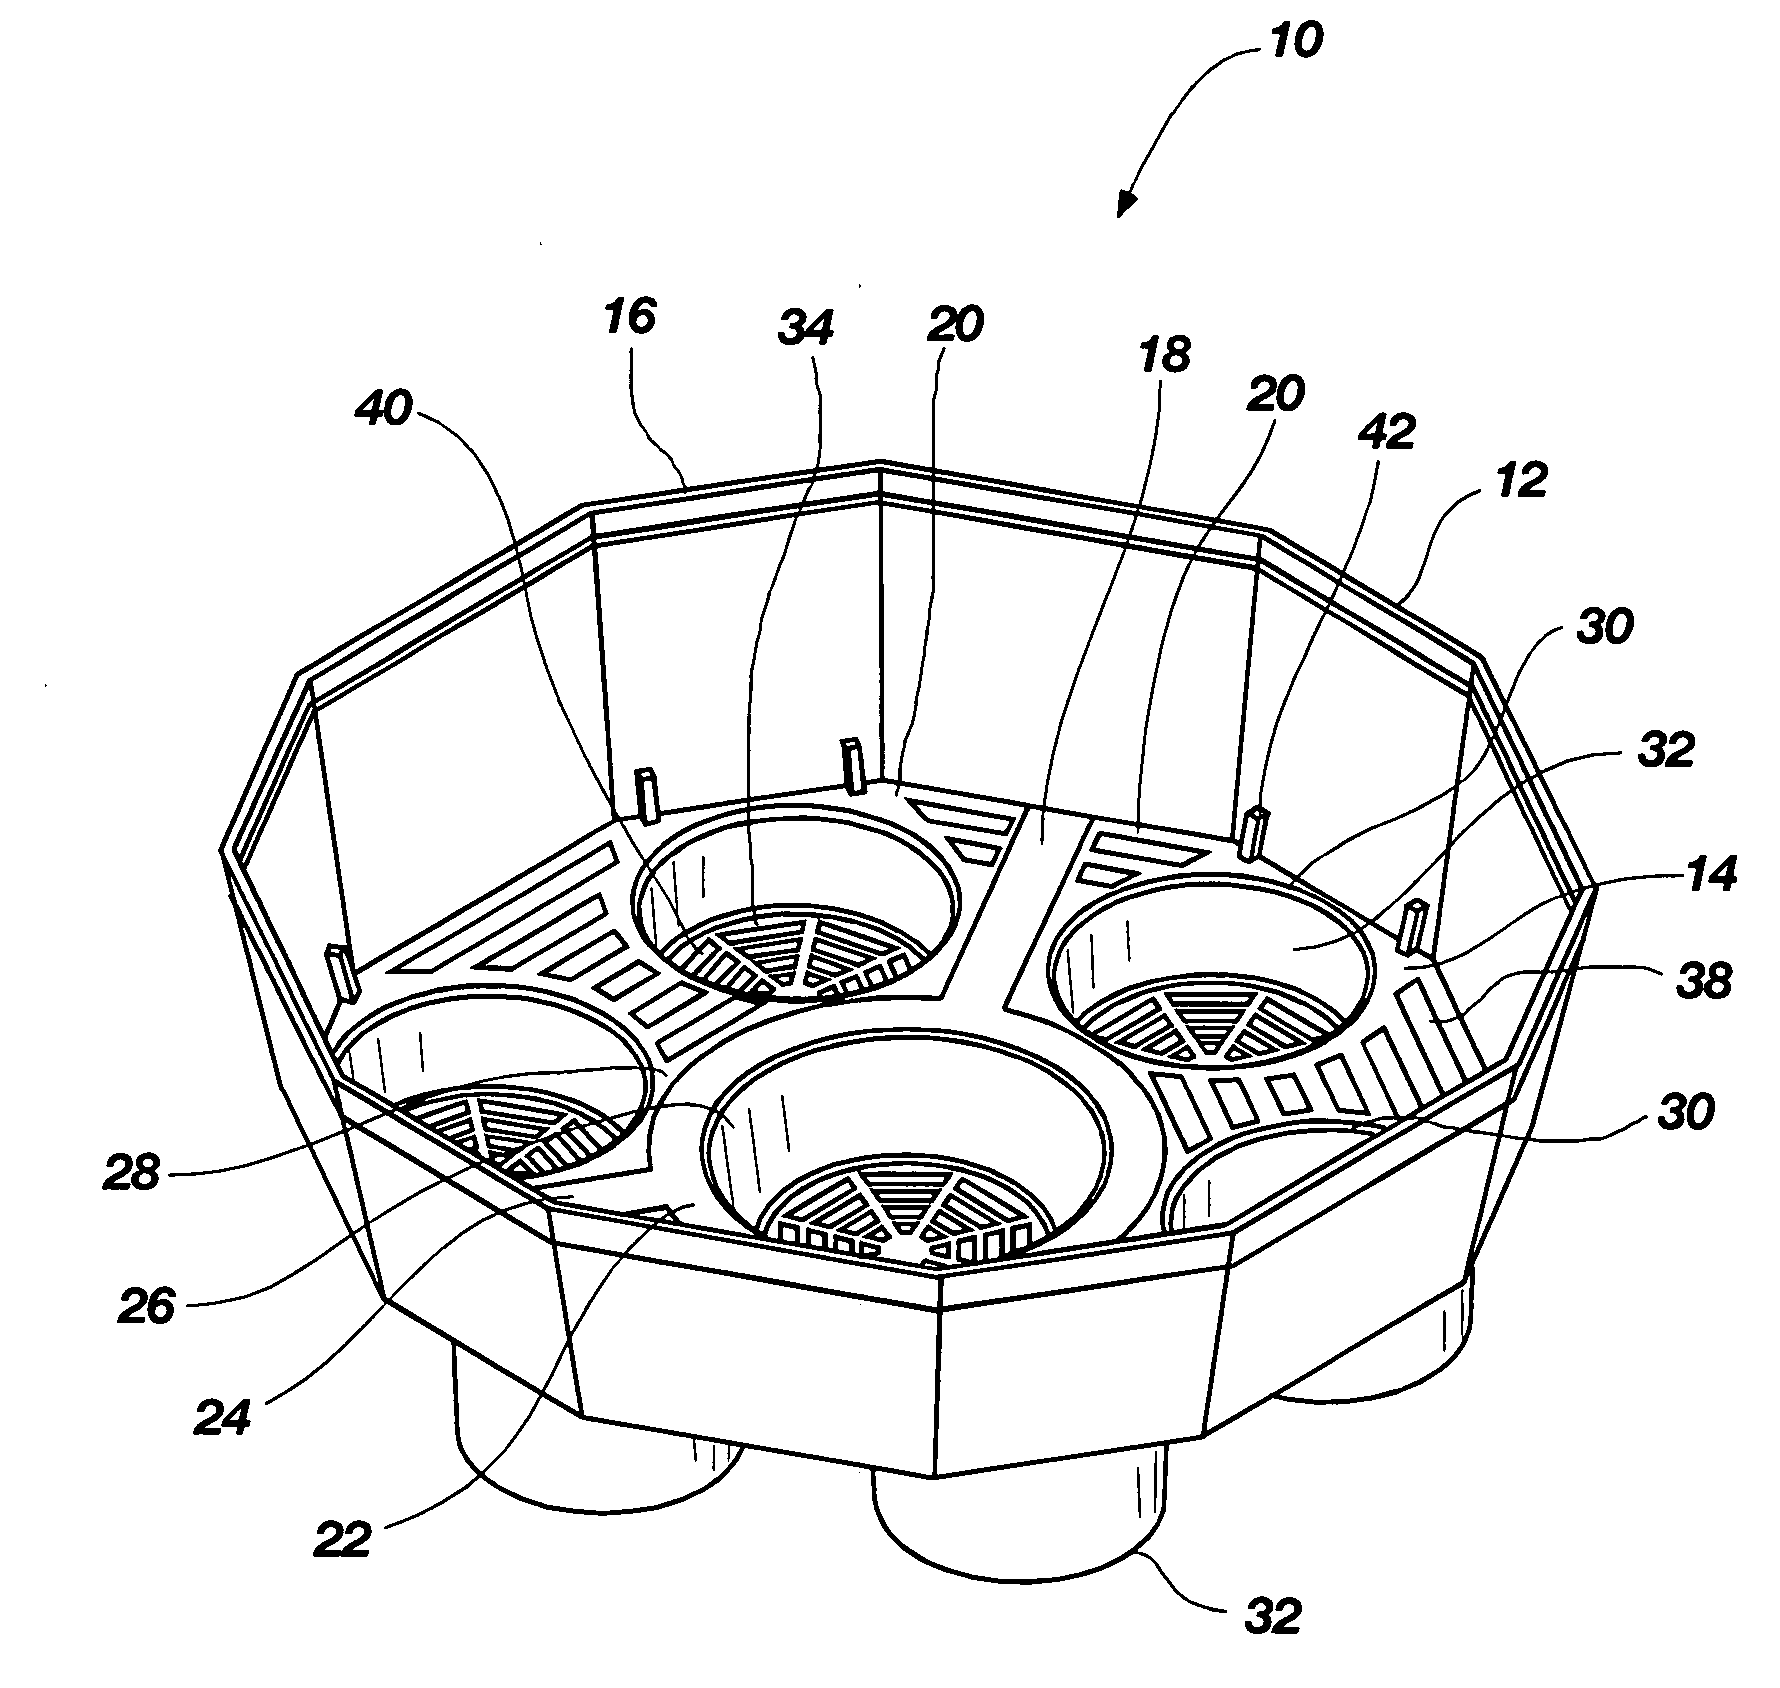 Multi-pot container